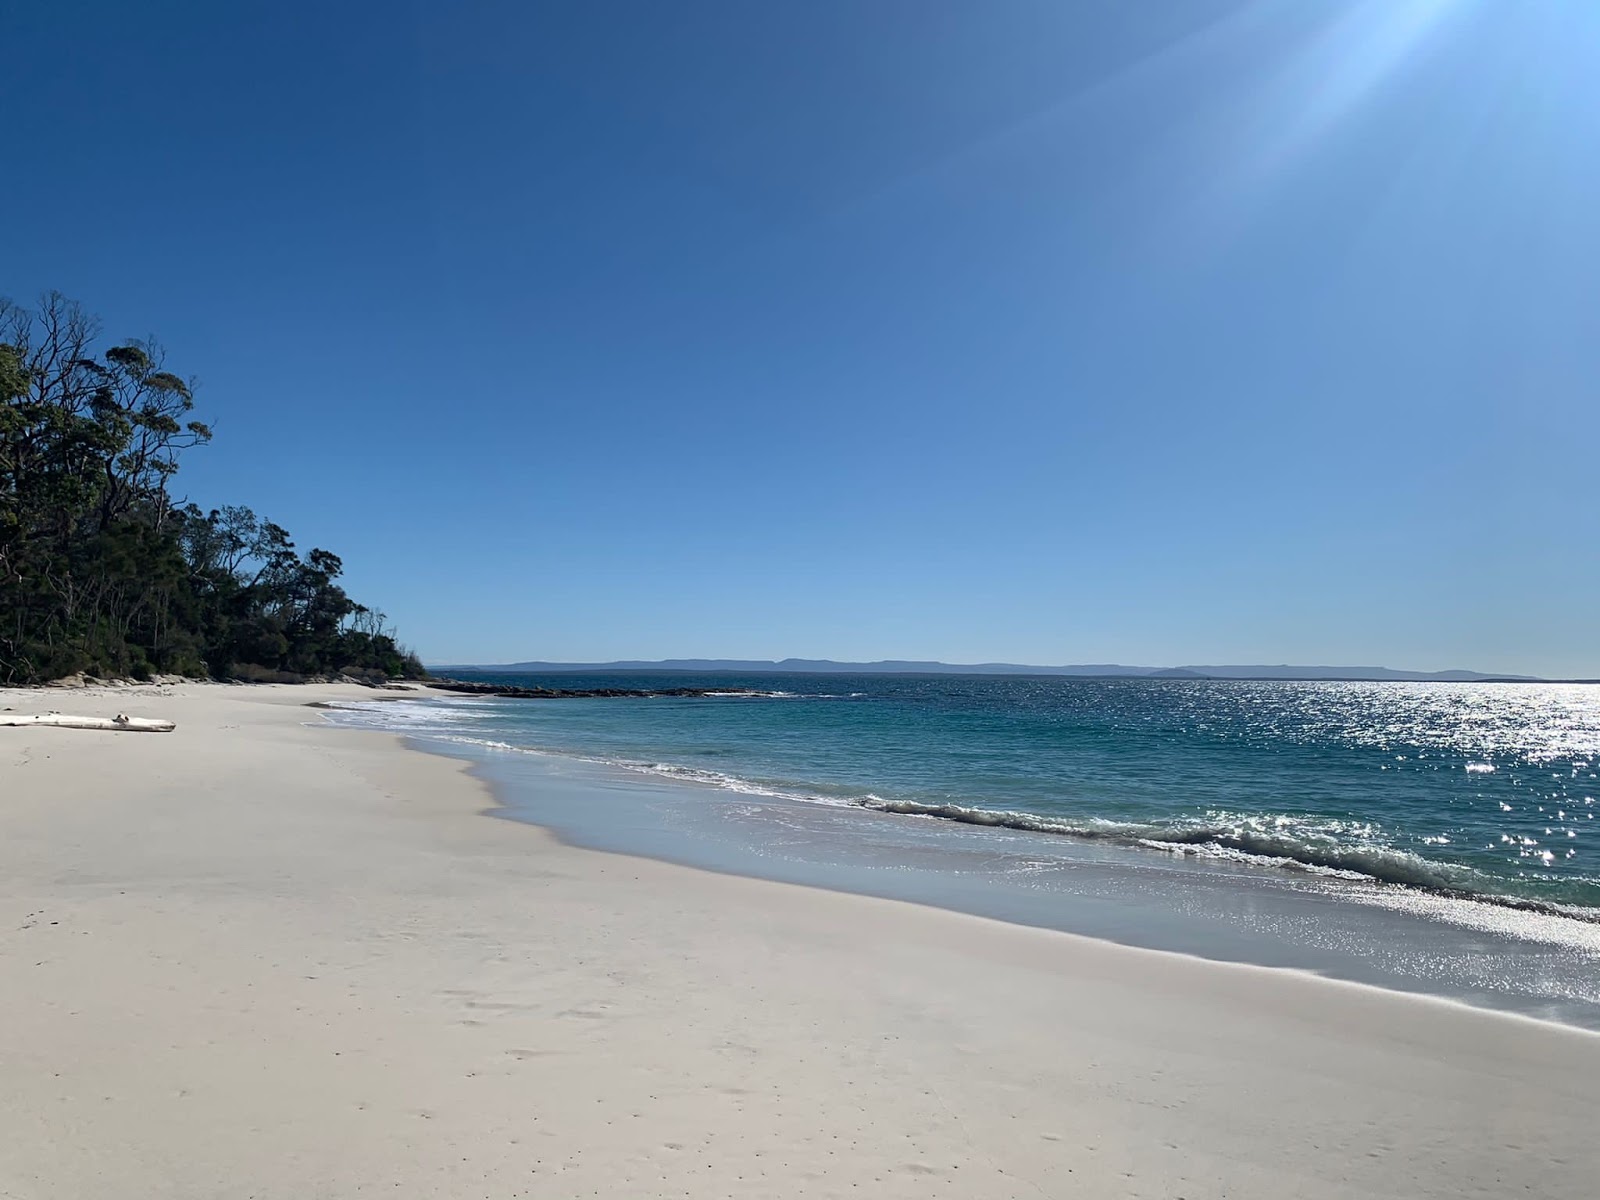 Murrays Beach'in fotoğrafı geniş plaj ile birlikte